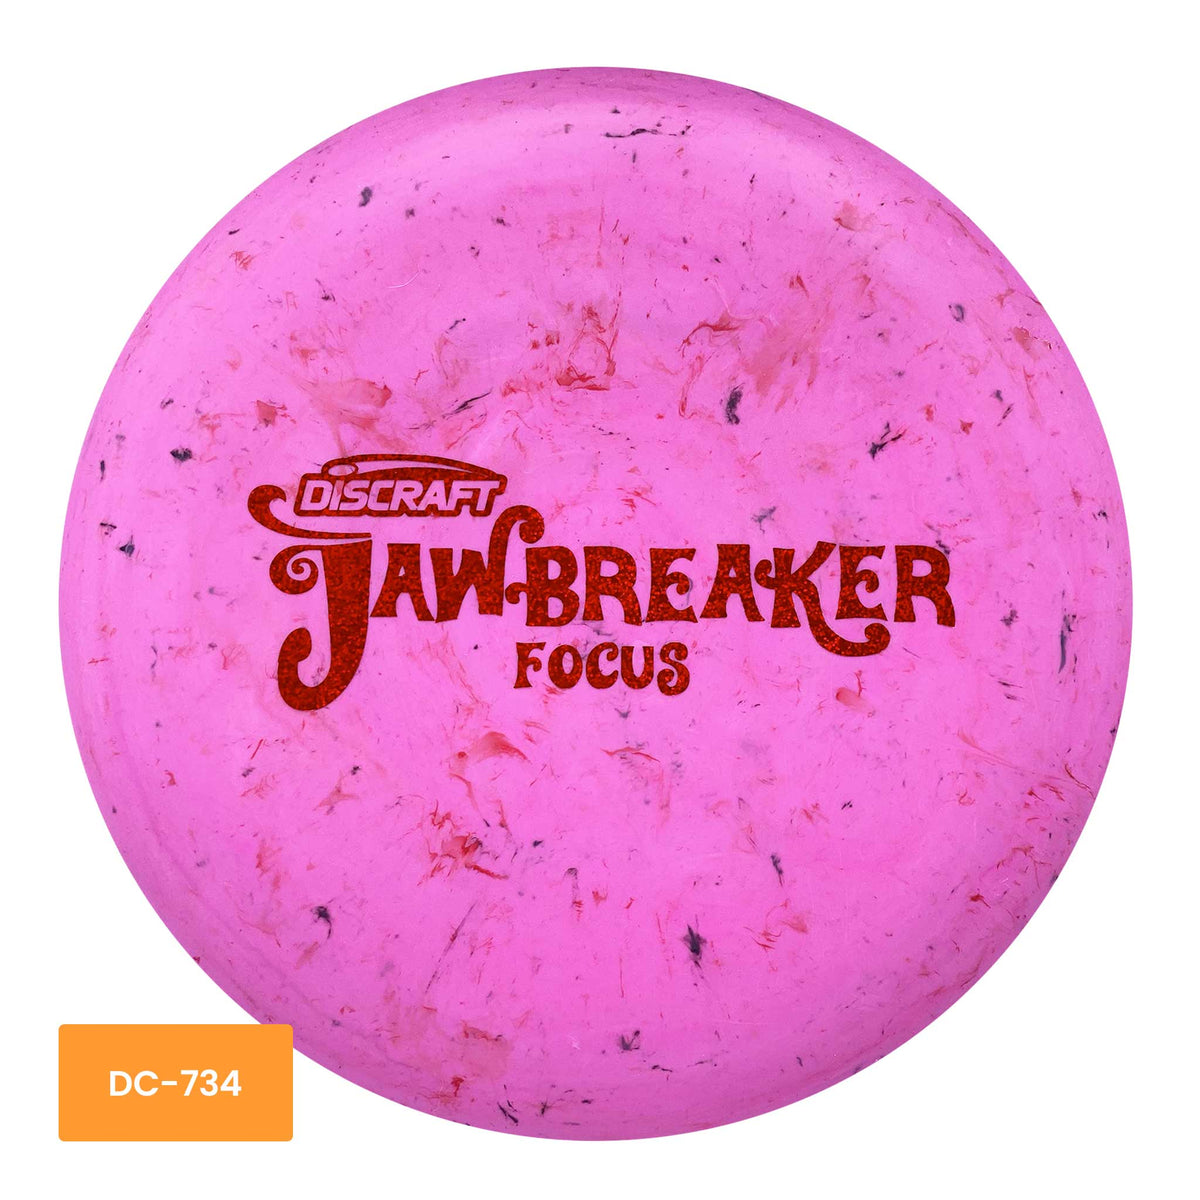 Discraft Jawbreaker Focus putter and approach - Pink